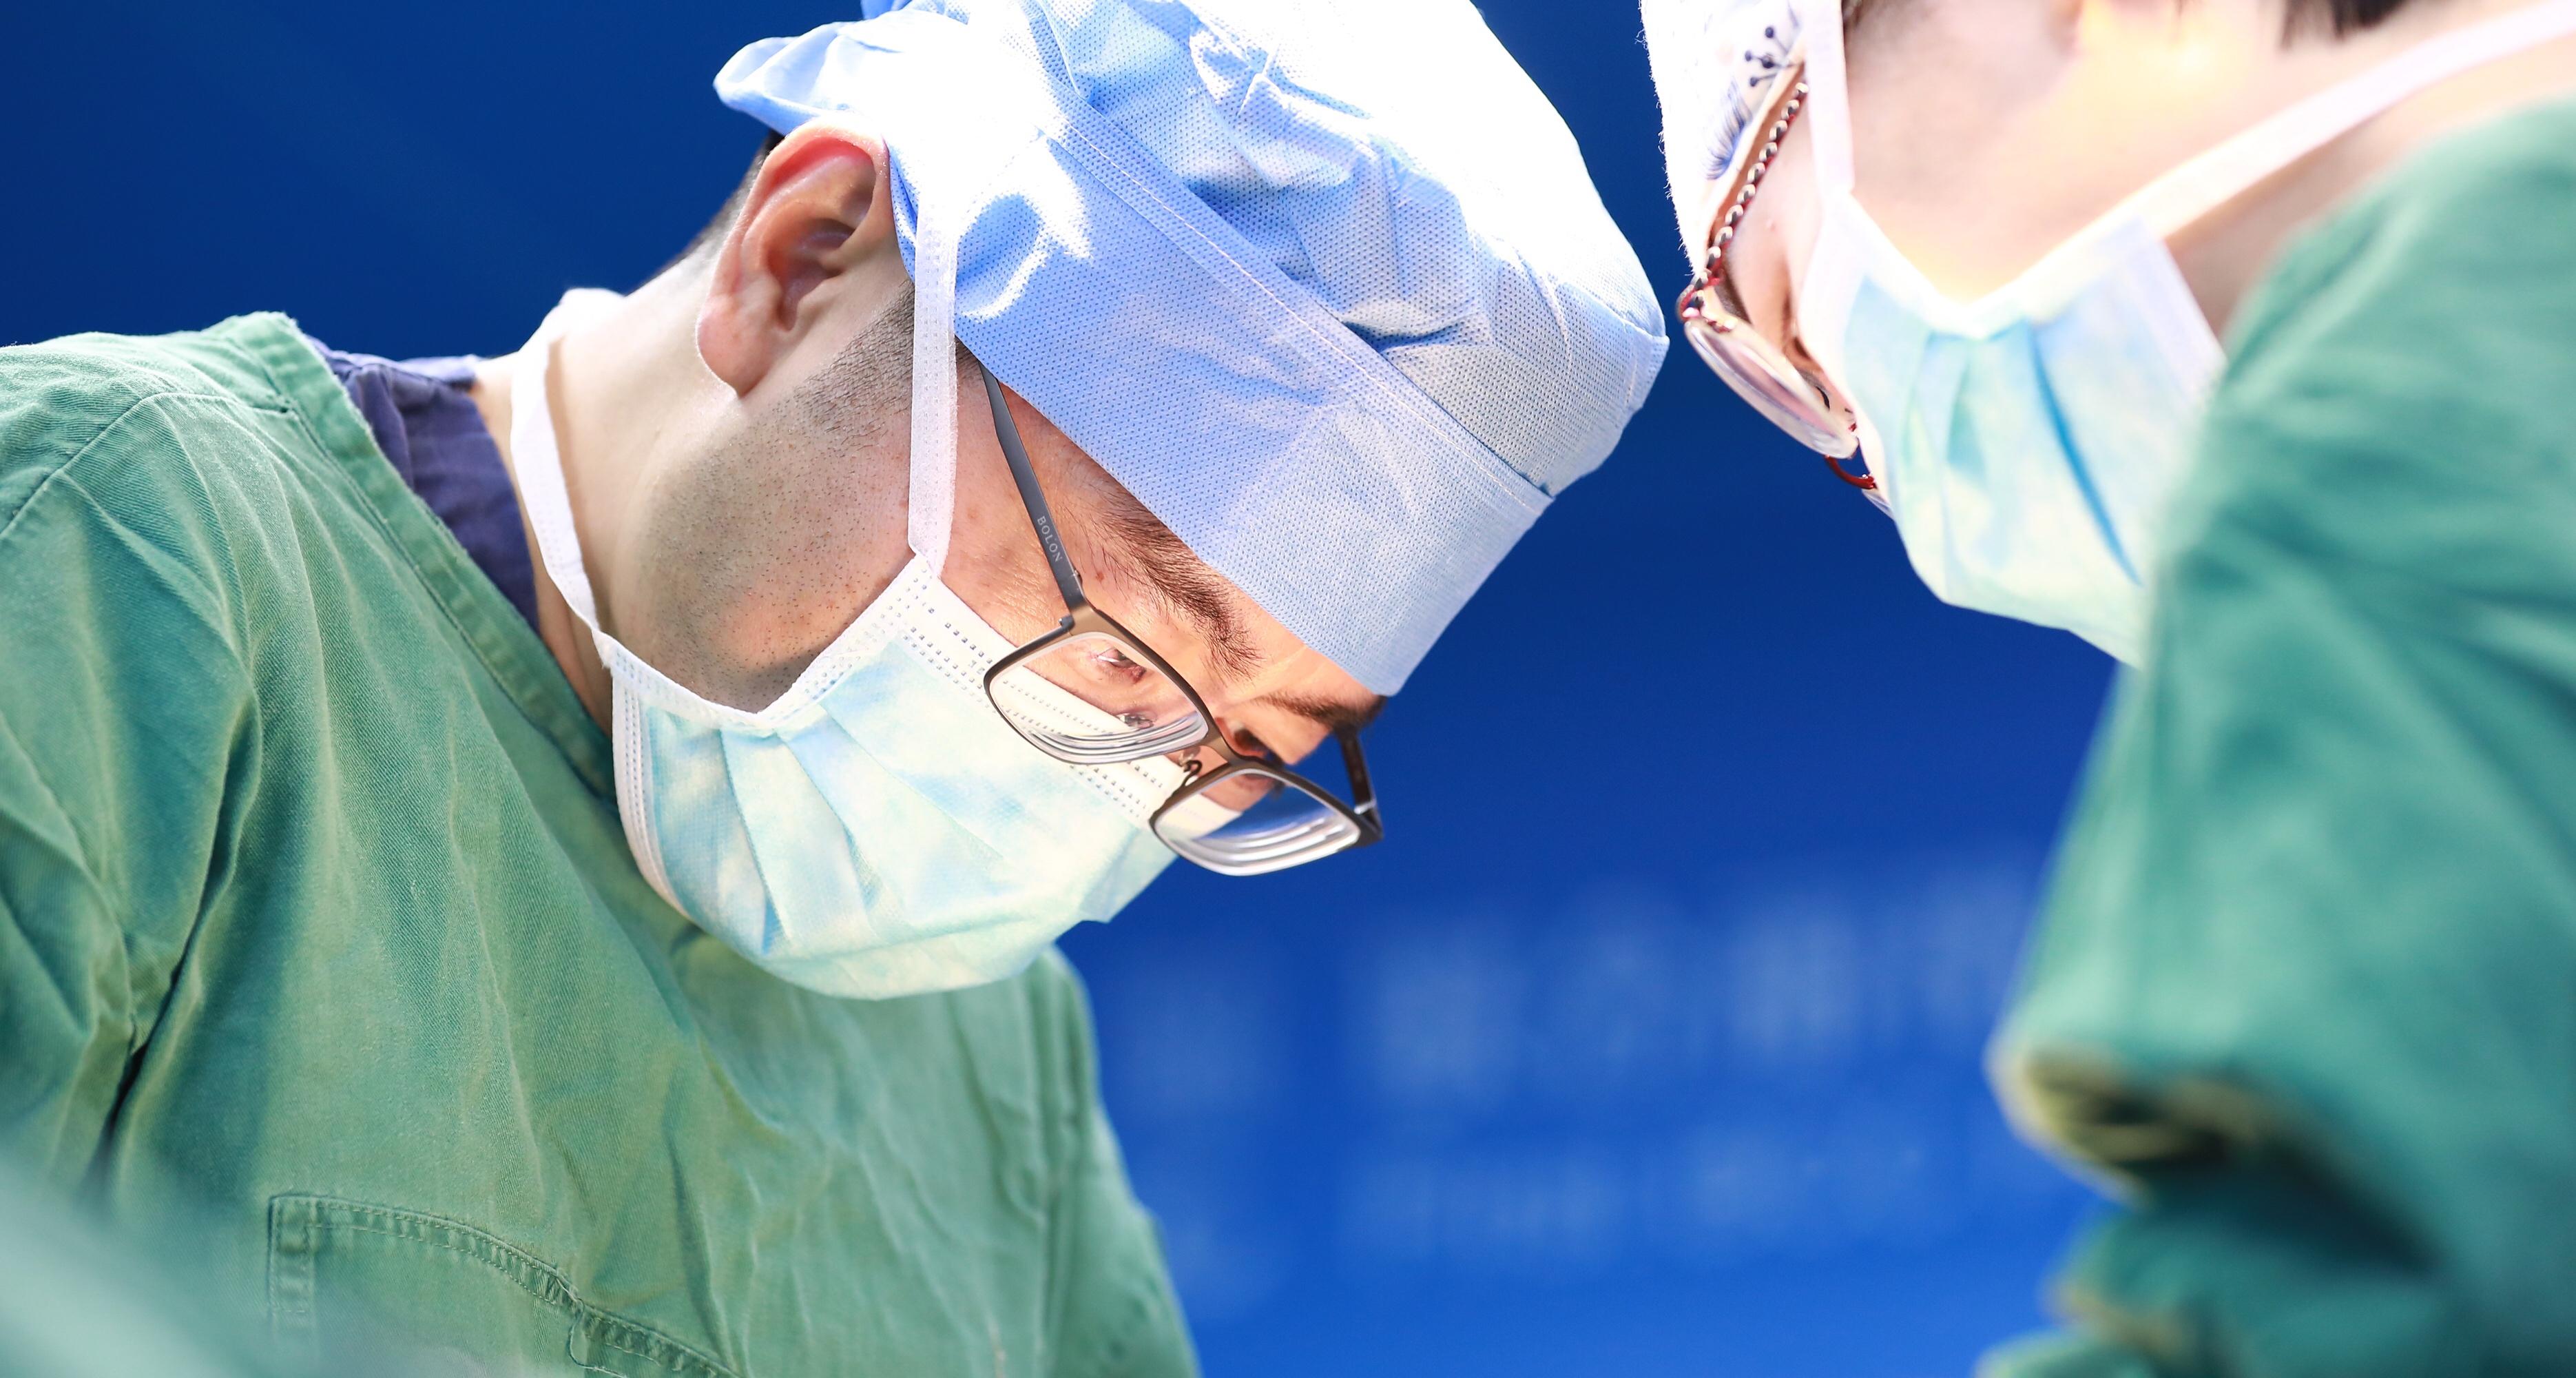 暑期小儿鼾症患儿激增，这家医院微创手术忙不停 - 新闻中心 - 南昌市第五医院